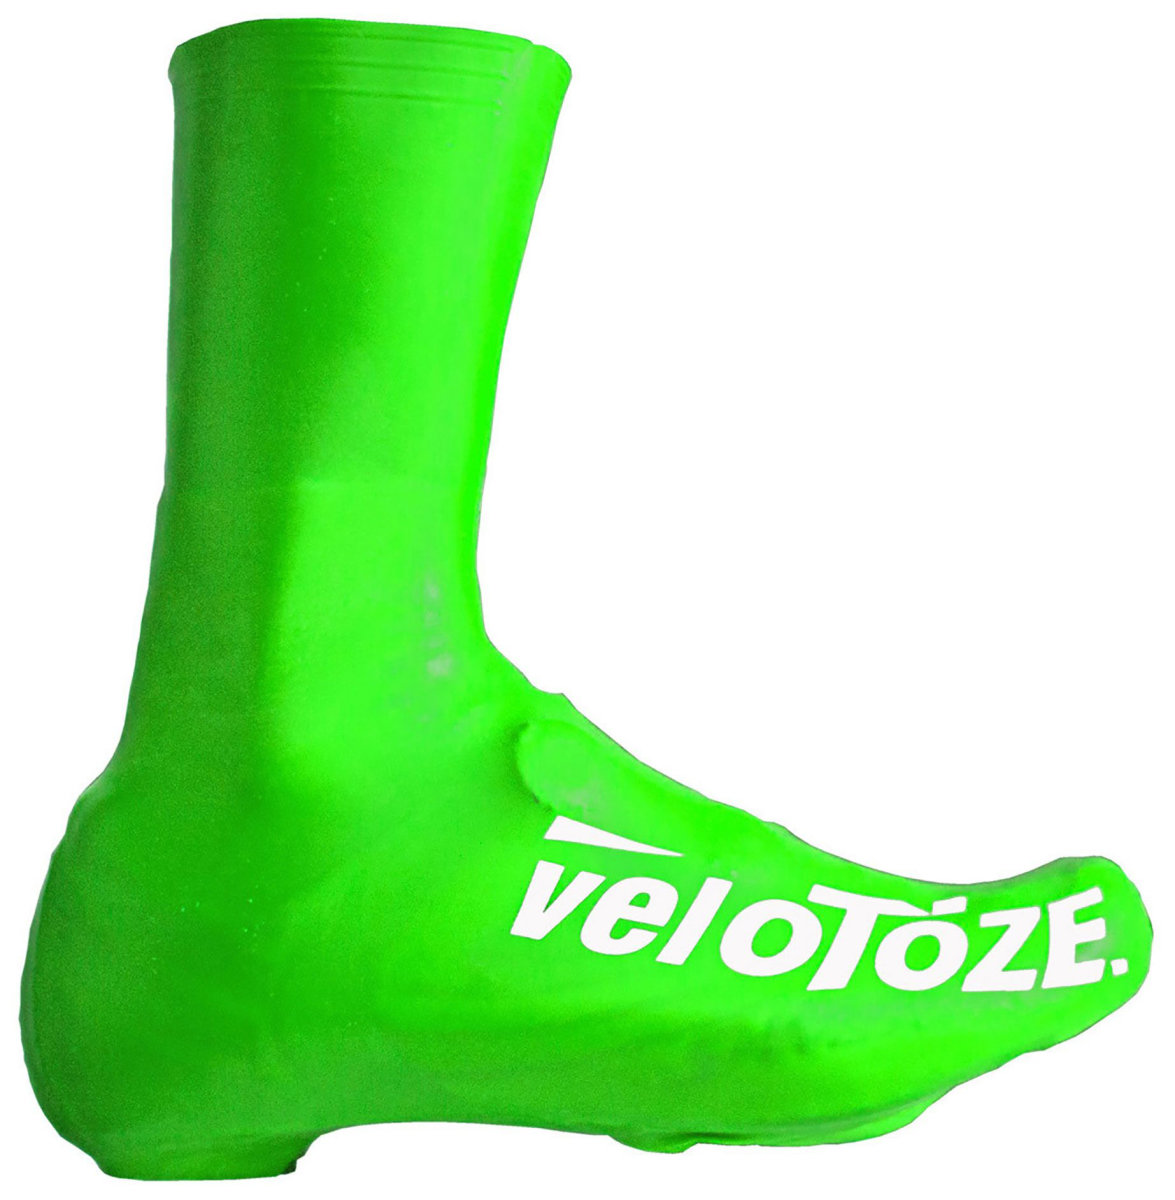 Бахилы высокие Velotoze MTB (Fluo Green) VTTALLGRXL, VTTALLGRL, VTTALLGRS, VTTALLGRM